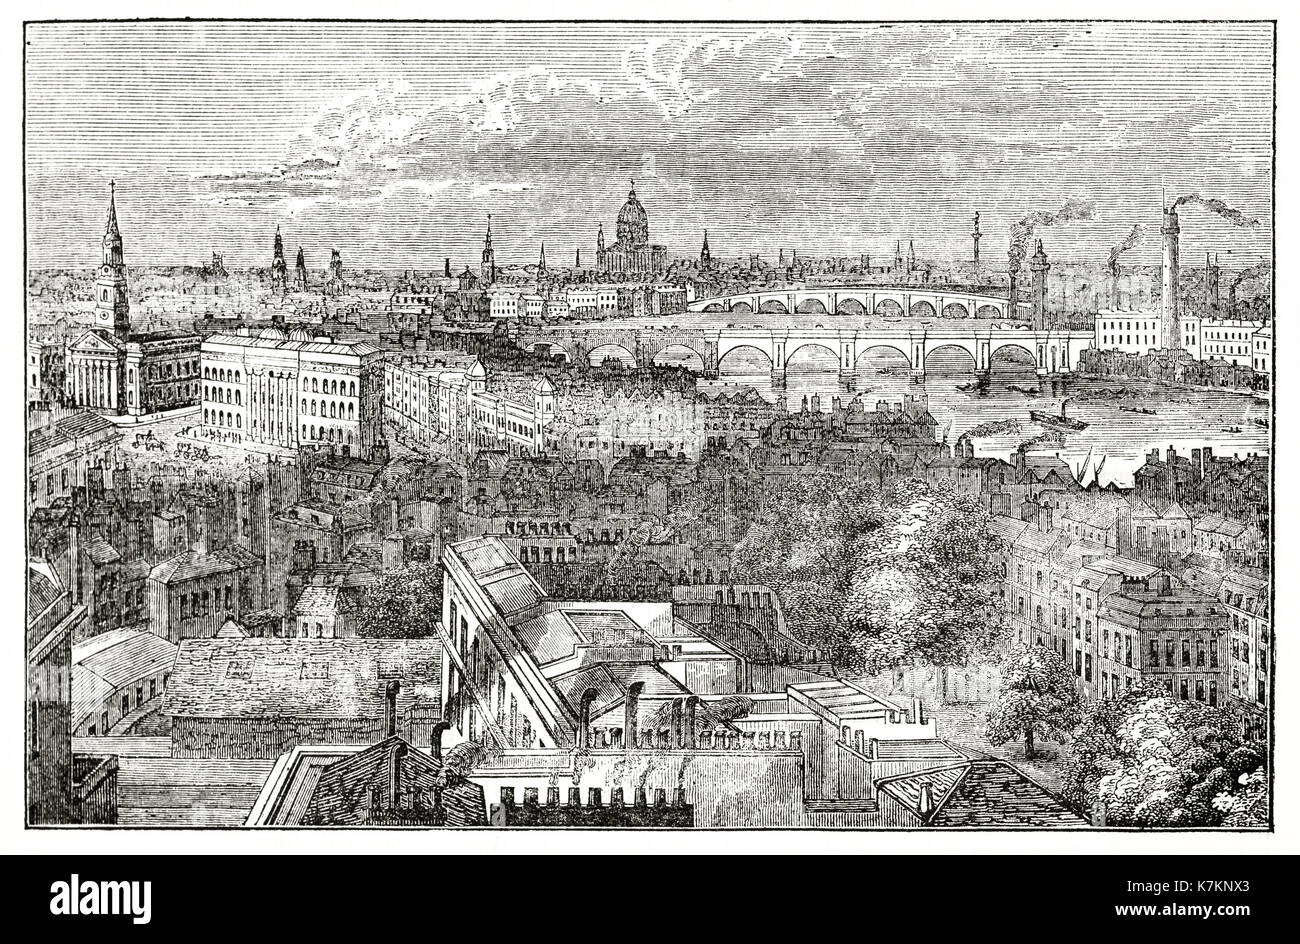 Vista anterior de Londres desde la columna de York. Por autor no identificado, Publ. de la Penny Magazine, Londres, 1837 Foto de stock